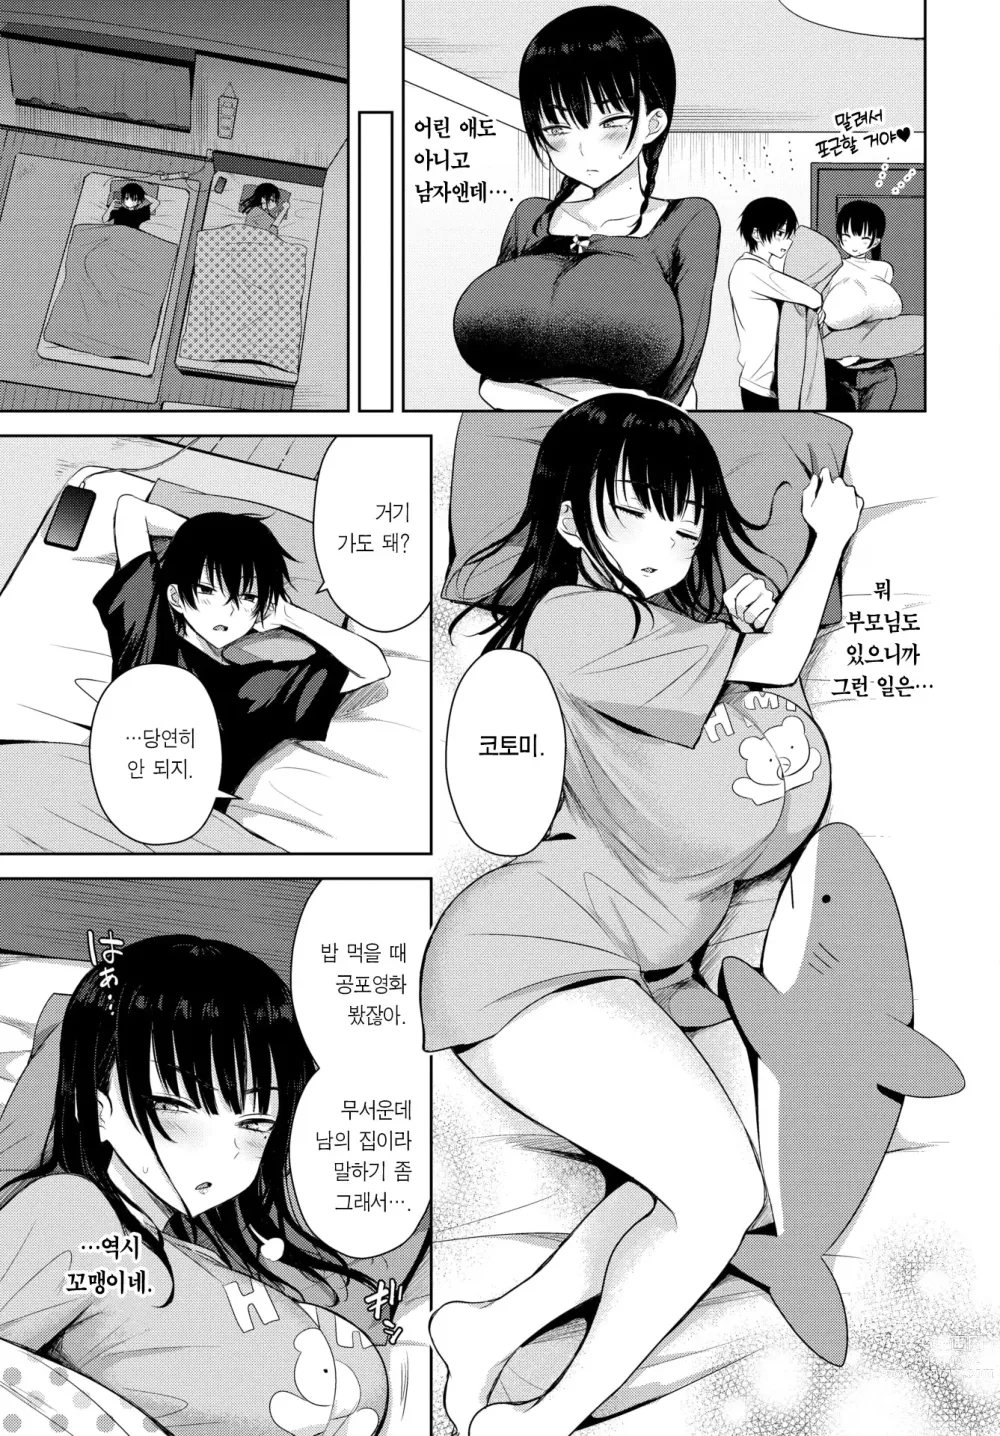 Page 4 of manga 7 Days